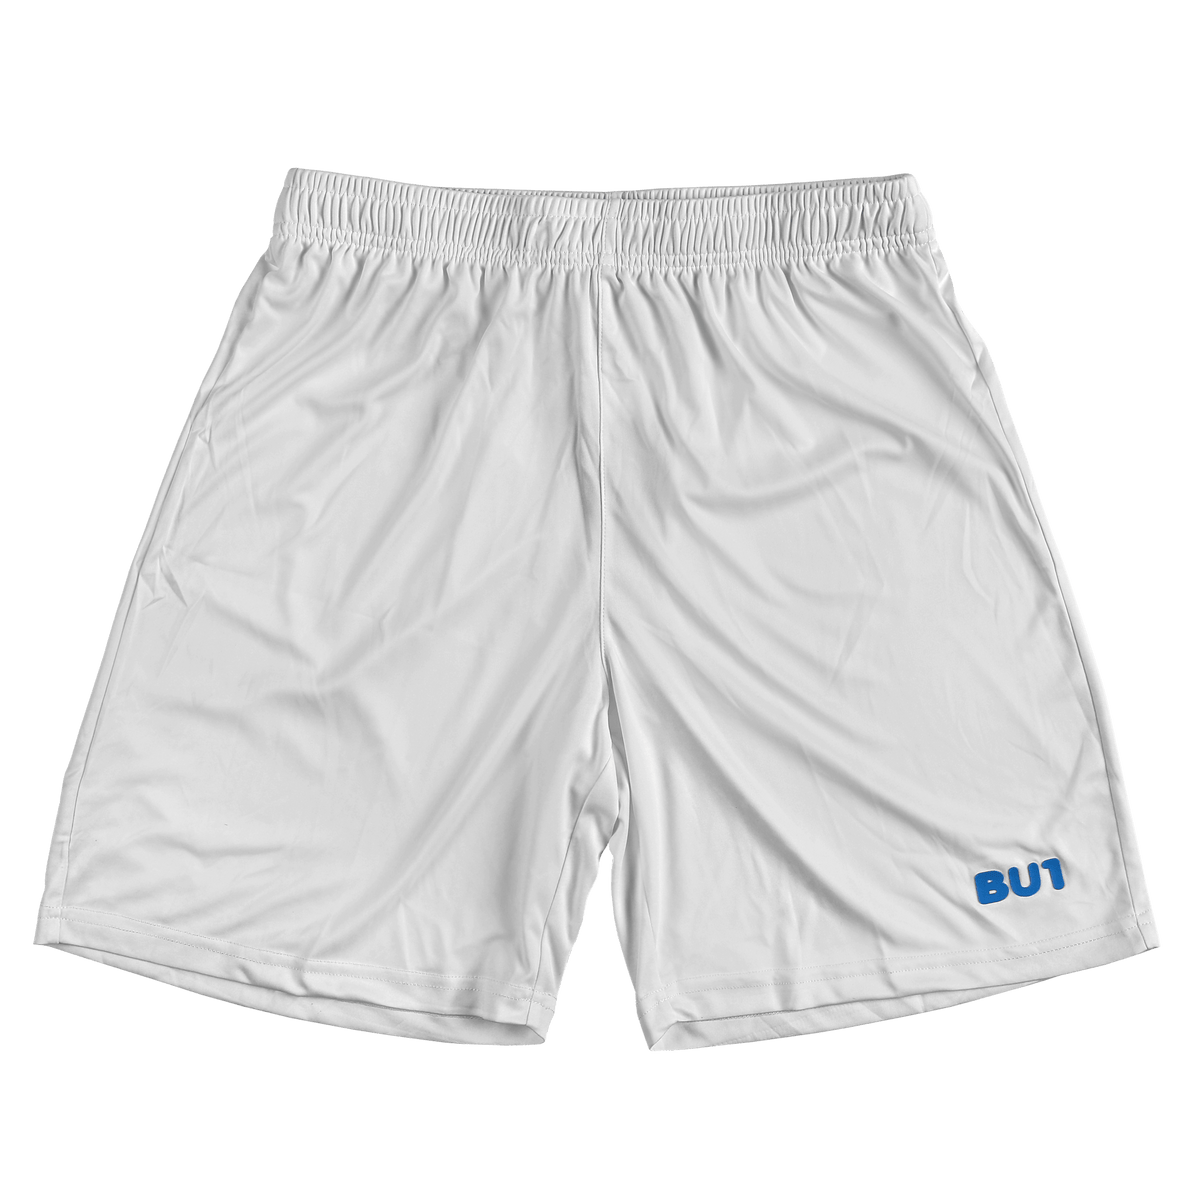 BU1 shorts 20 white